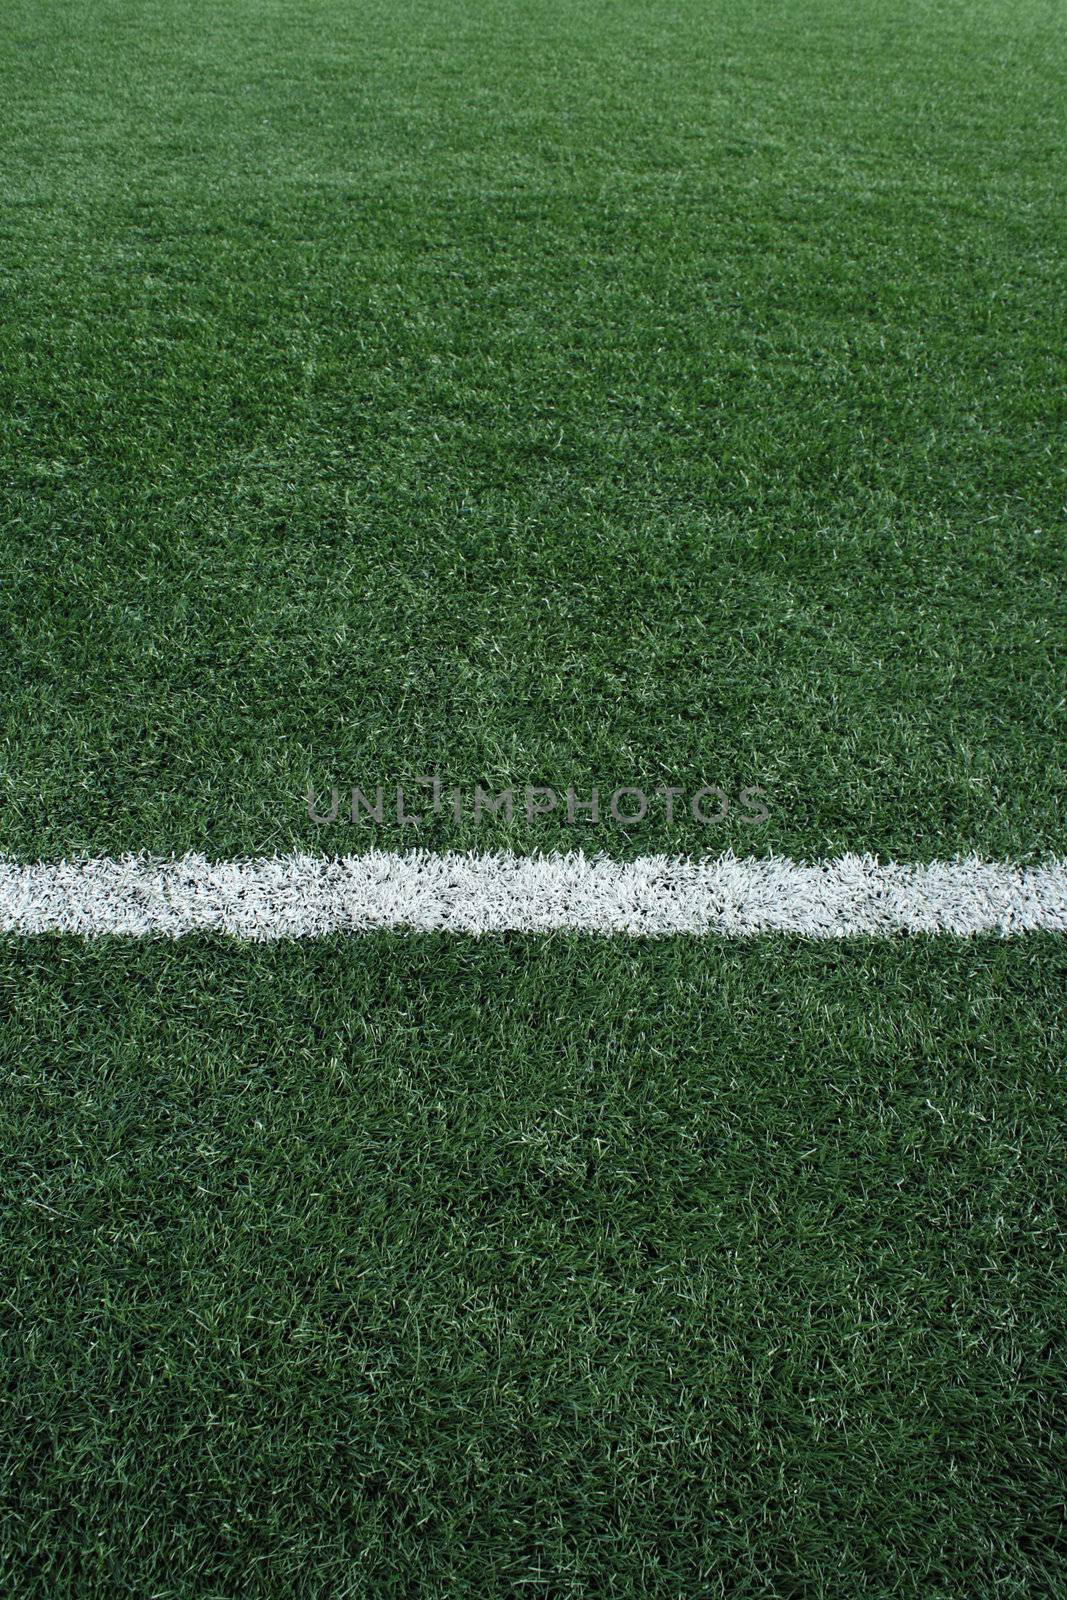 Artificial grass soccer field by liewluck